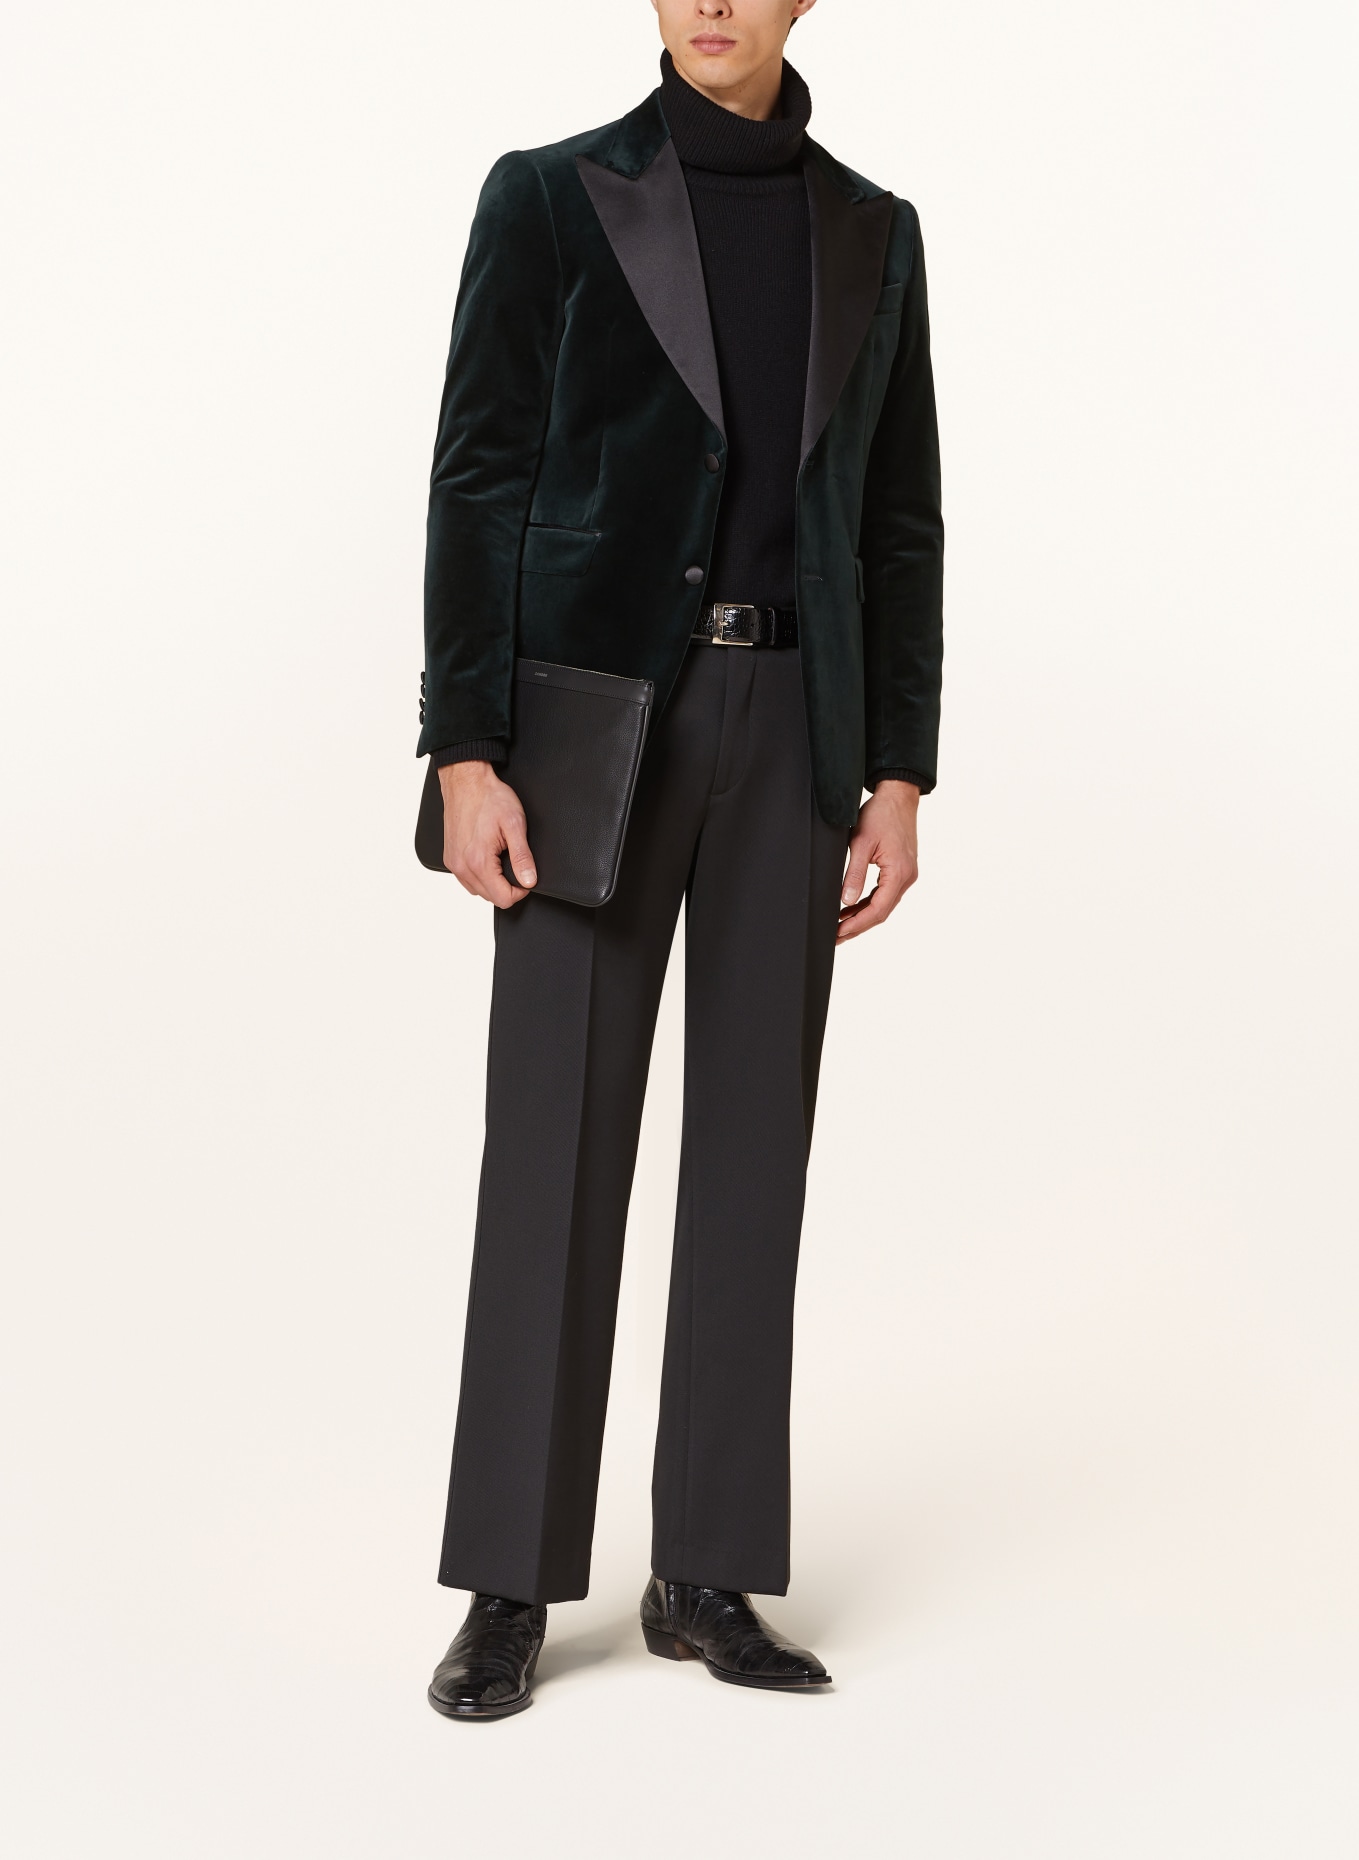 TIGER OF SWEDEN Smoking tailored jacket JEFFERS regular fit made of velvet, Color: DARK GREEN/ BLACK (Image 2)